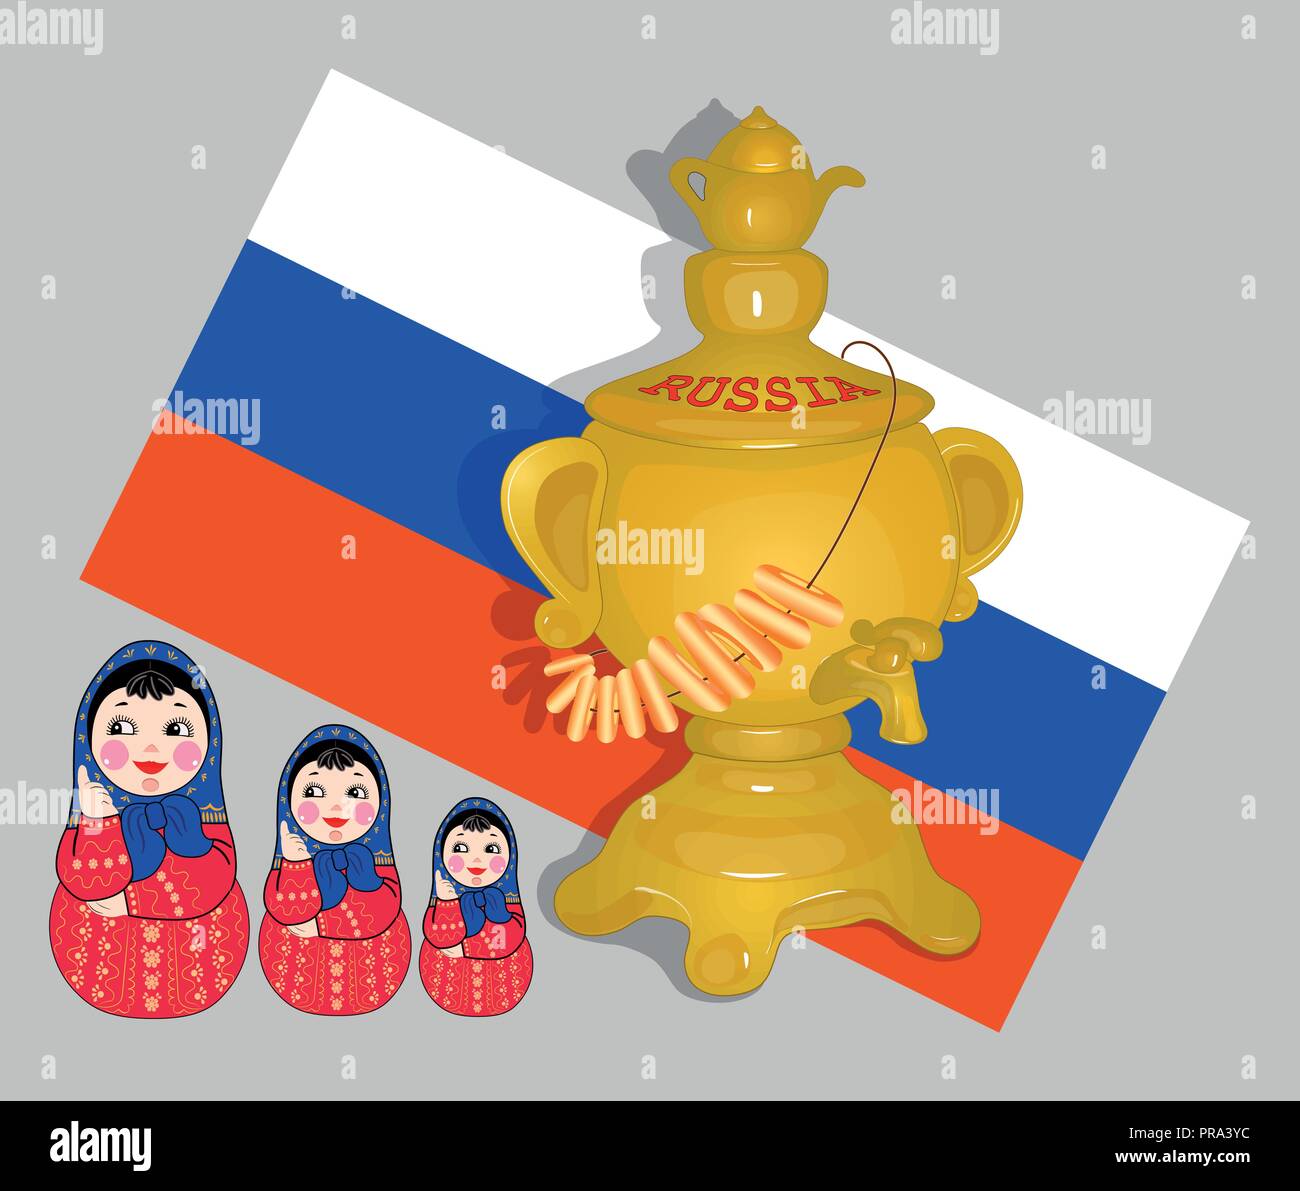 Plakat mit der Flagge Russlands. Goldener Samowar mit Teekanne. Matryoschka  Russisch in einem roten Kleid , ein blaues Taschentuch. Vektor  Stock-Vektorgrafik - Alamy